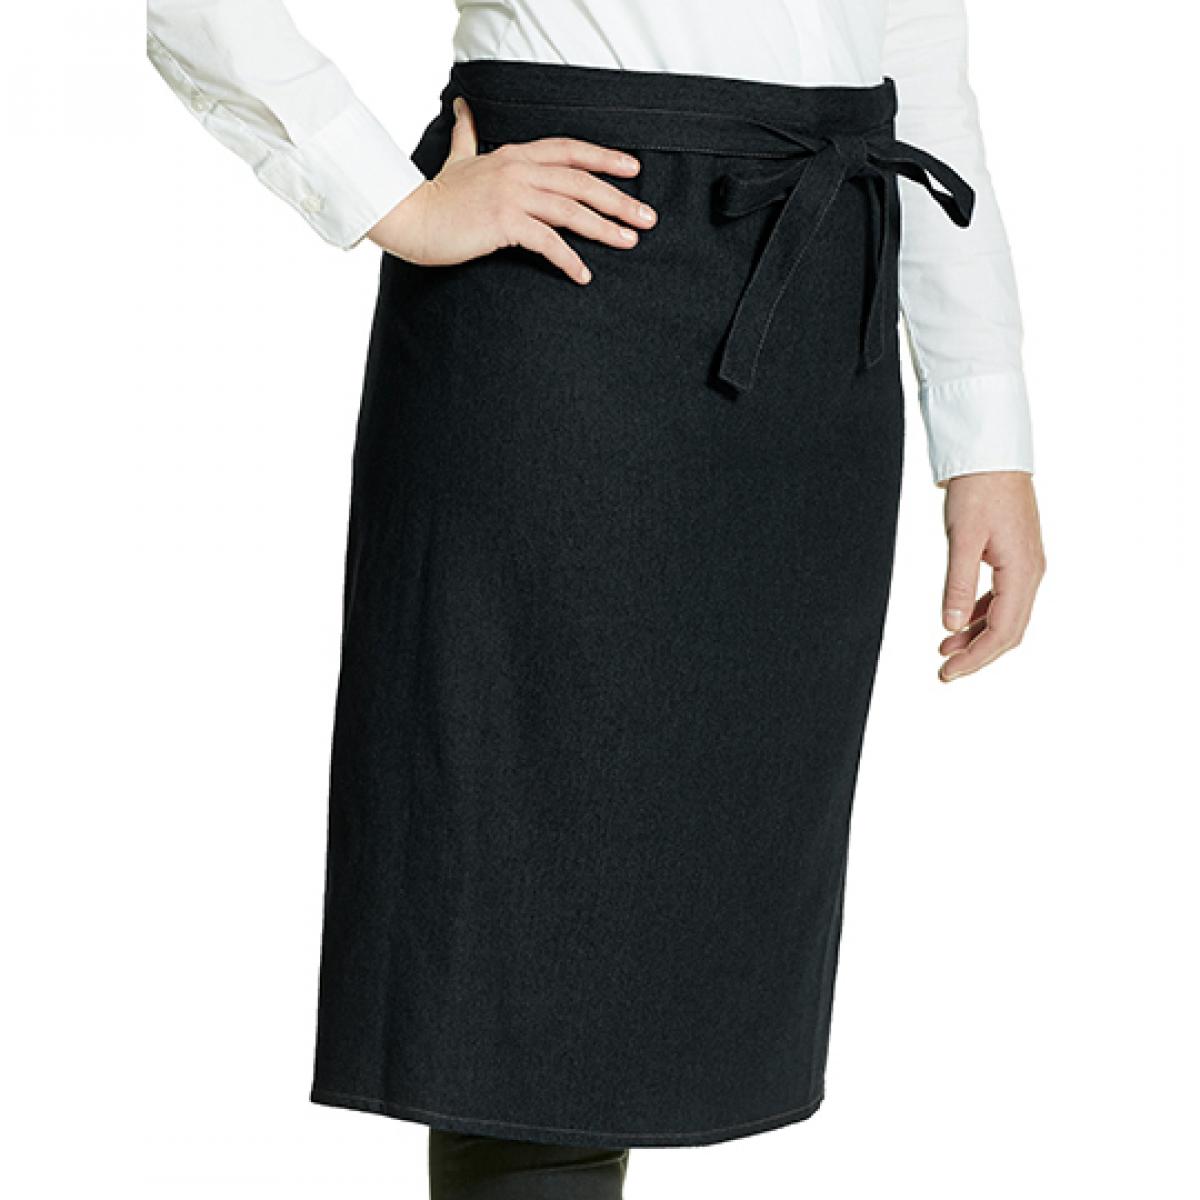 Hersteller: Link Kitchen Wear Herstellernummer: KS70100JNS Artikelbezeichnung: Jeans Cook`s Apron - 100 x 70 cm - Waschbar bis 60 °C Farbe: Black